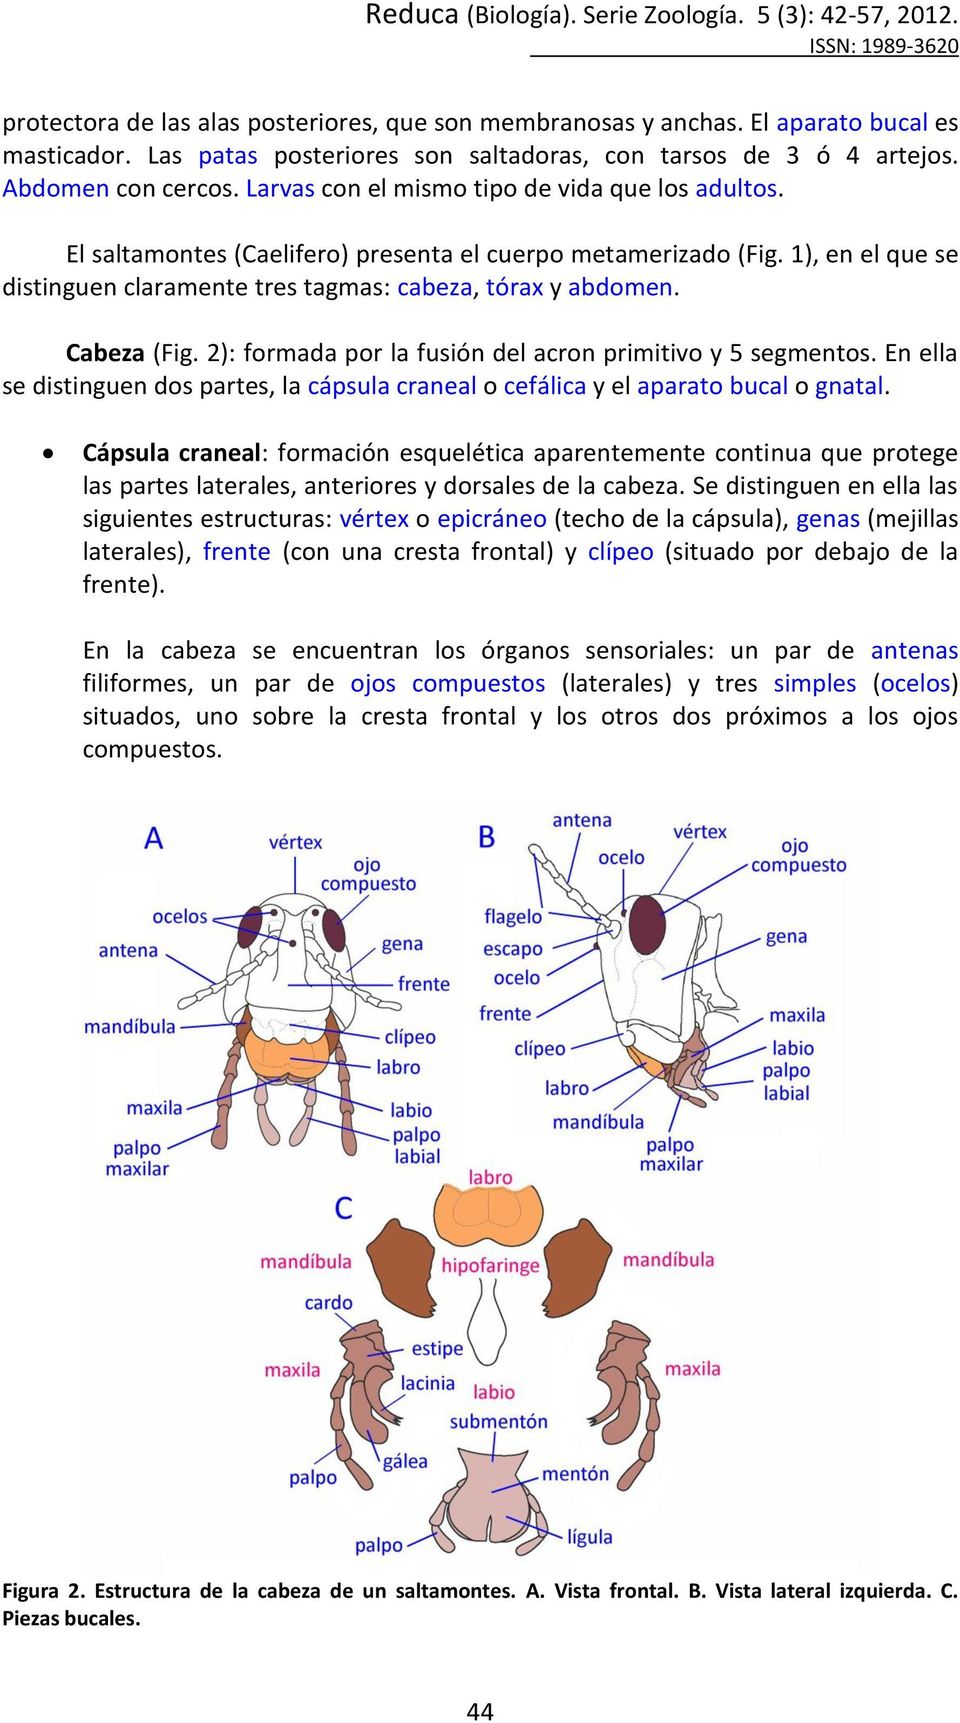 Cabeza (Fig. 2): formada por la fusión del acron primitivo y 5 segmentos. En ella se distinguen dos partes, la cápsula craneal o cefálica y el aparato bucal o gnatal.